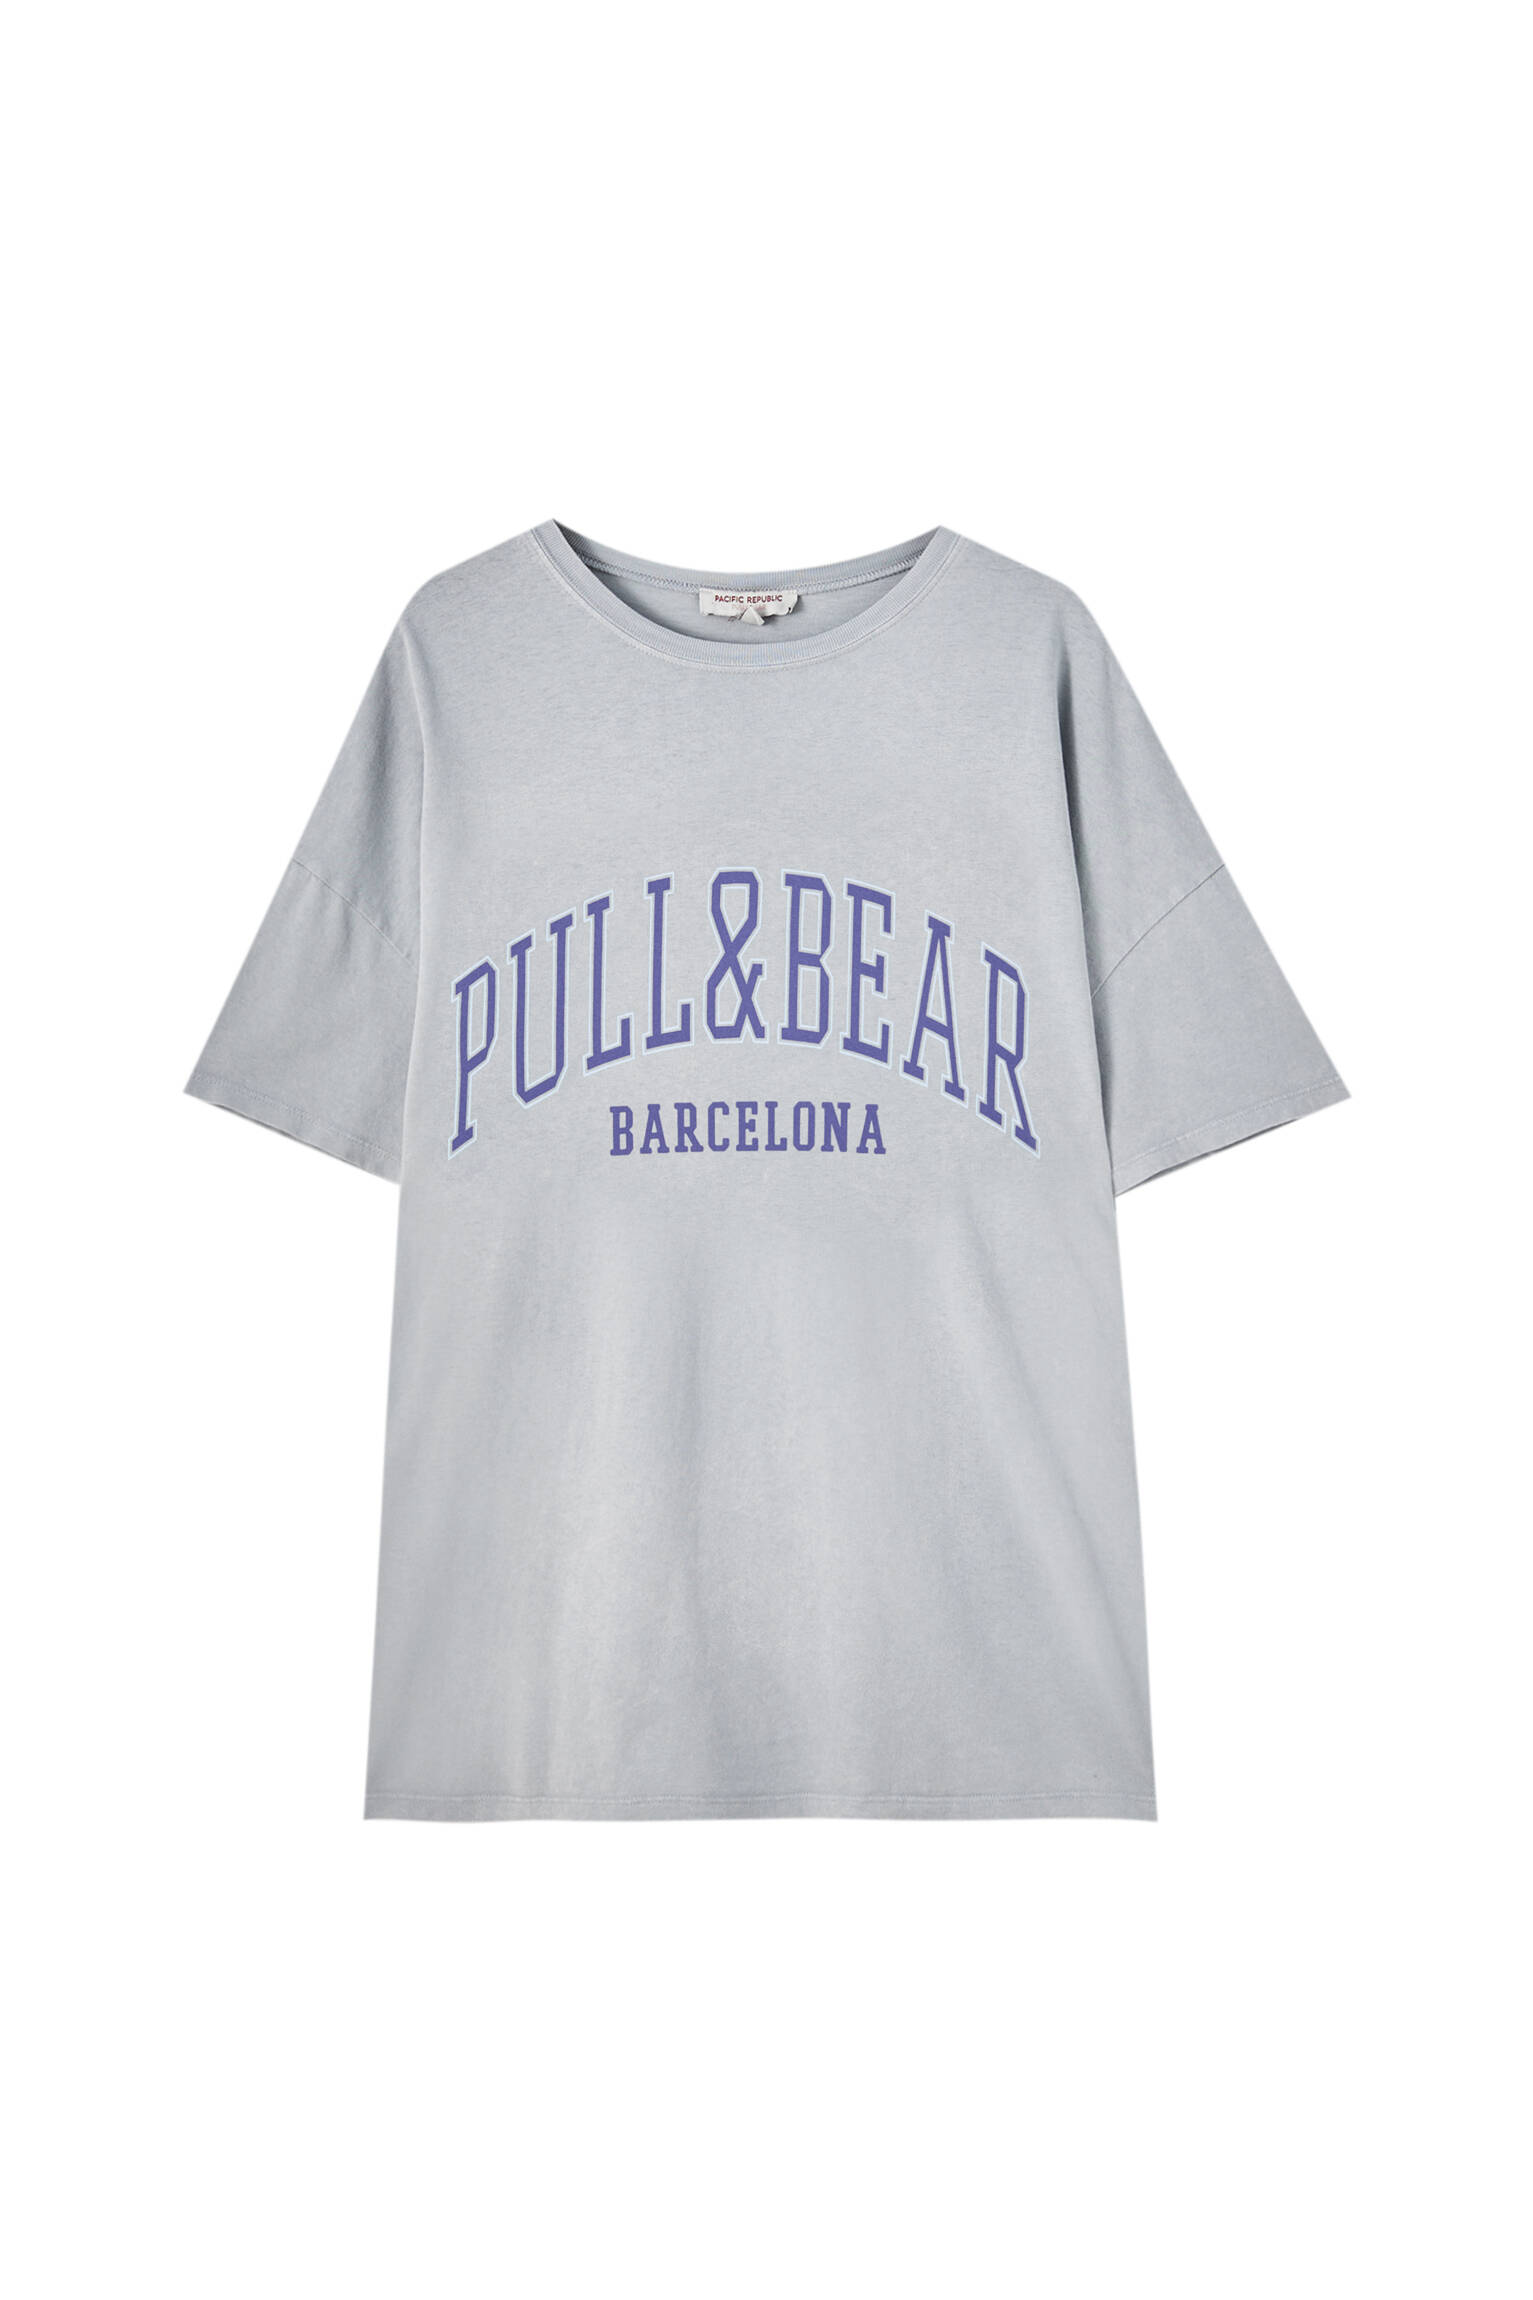 Pull&bear Femme T-shirt 100 % Coton à Col Rond Et Manches Courtes, Avec Logo Pull&bear Et Inscription Barcelona Contrastante Sur La Poitrine. Gris Ciment S